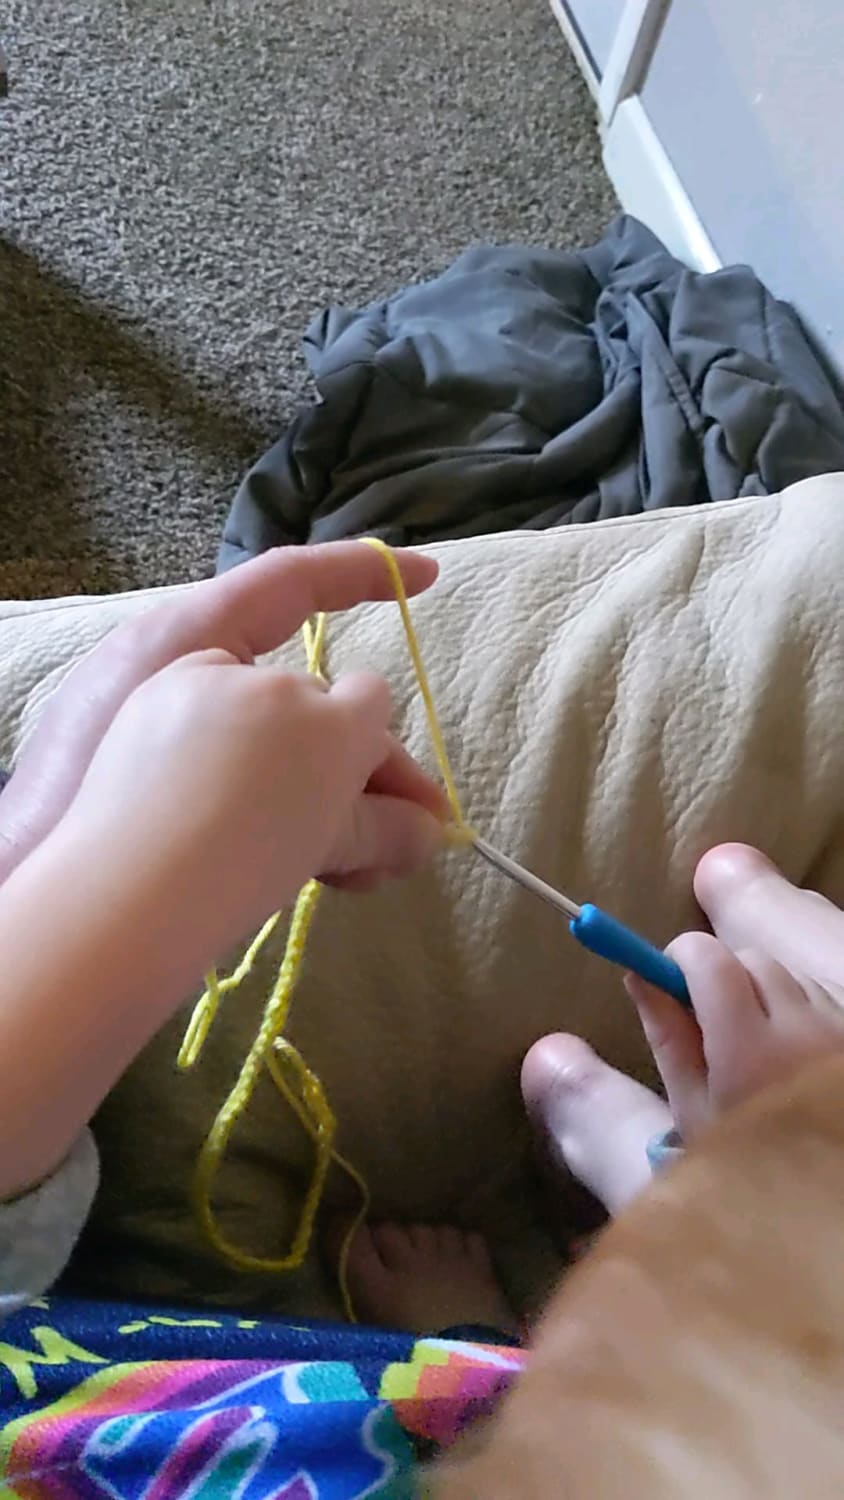 My 4 year old has taken an interest in crochet!